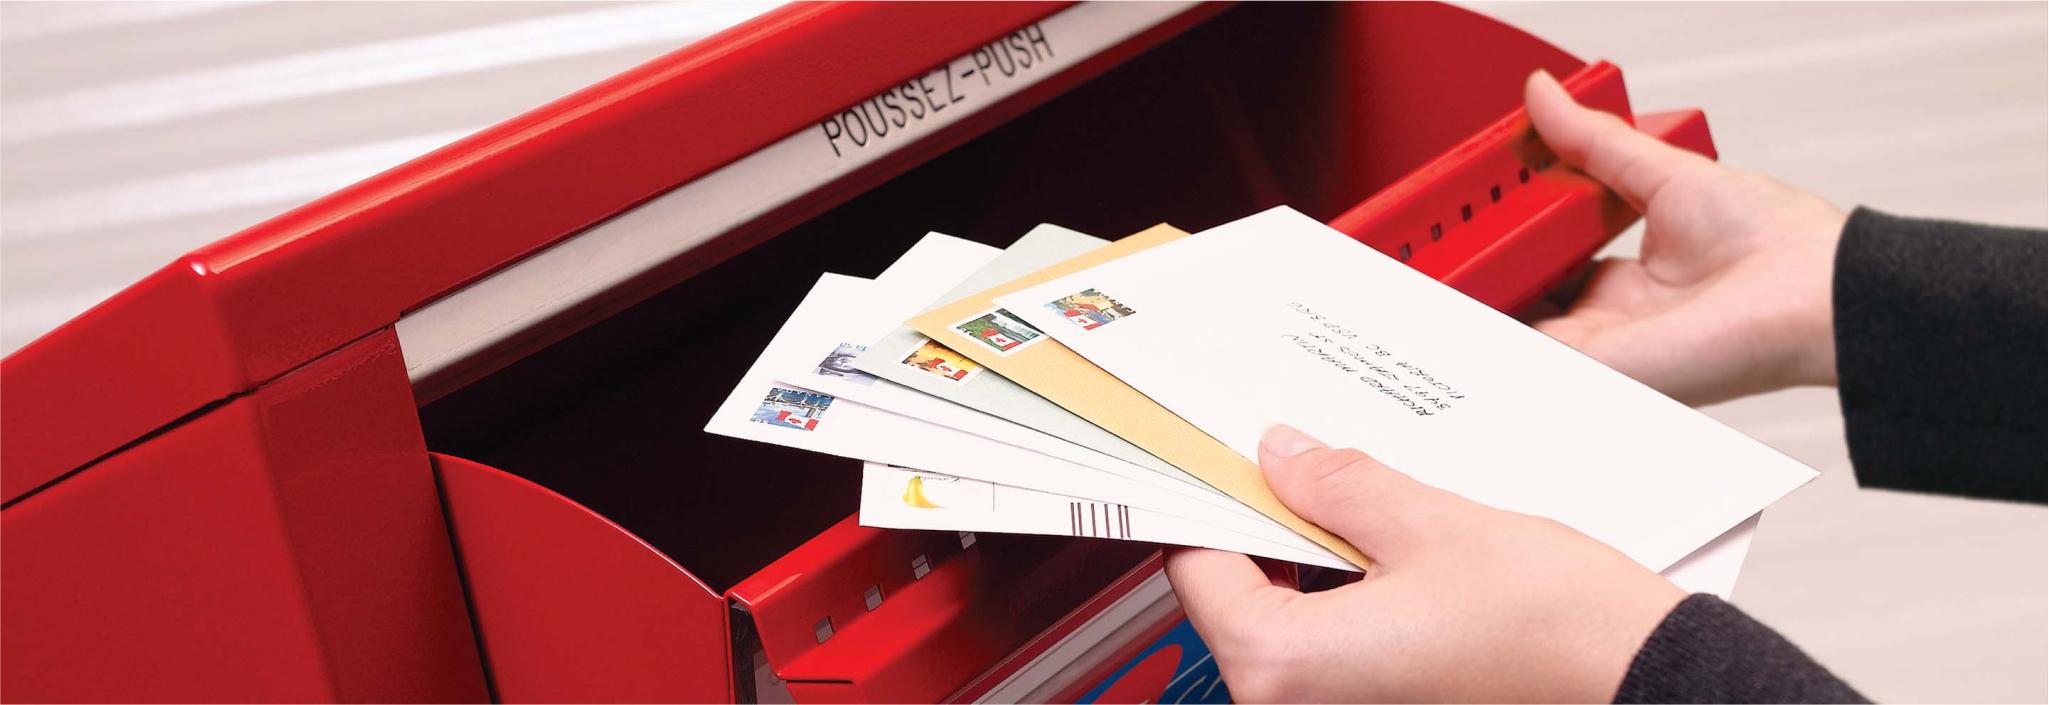 Une pile d’enveloppes prêtes pour l’expédition est placée dans une boîte aux lettres publique de Postes Canada